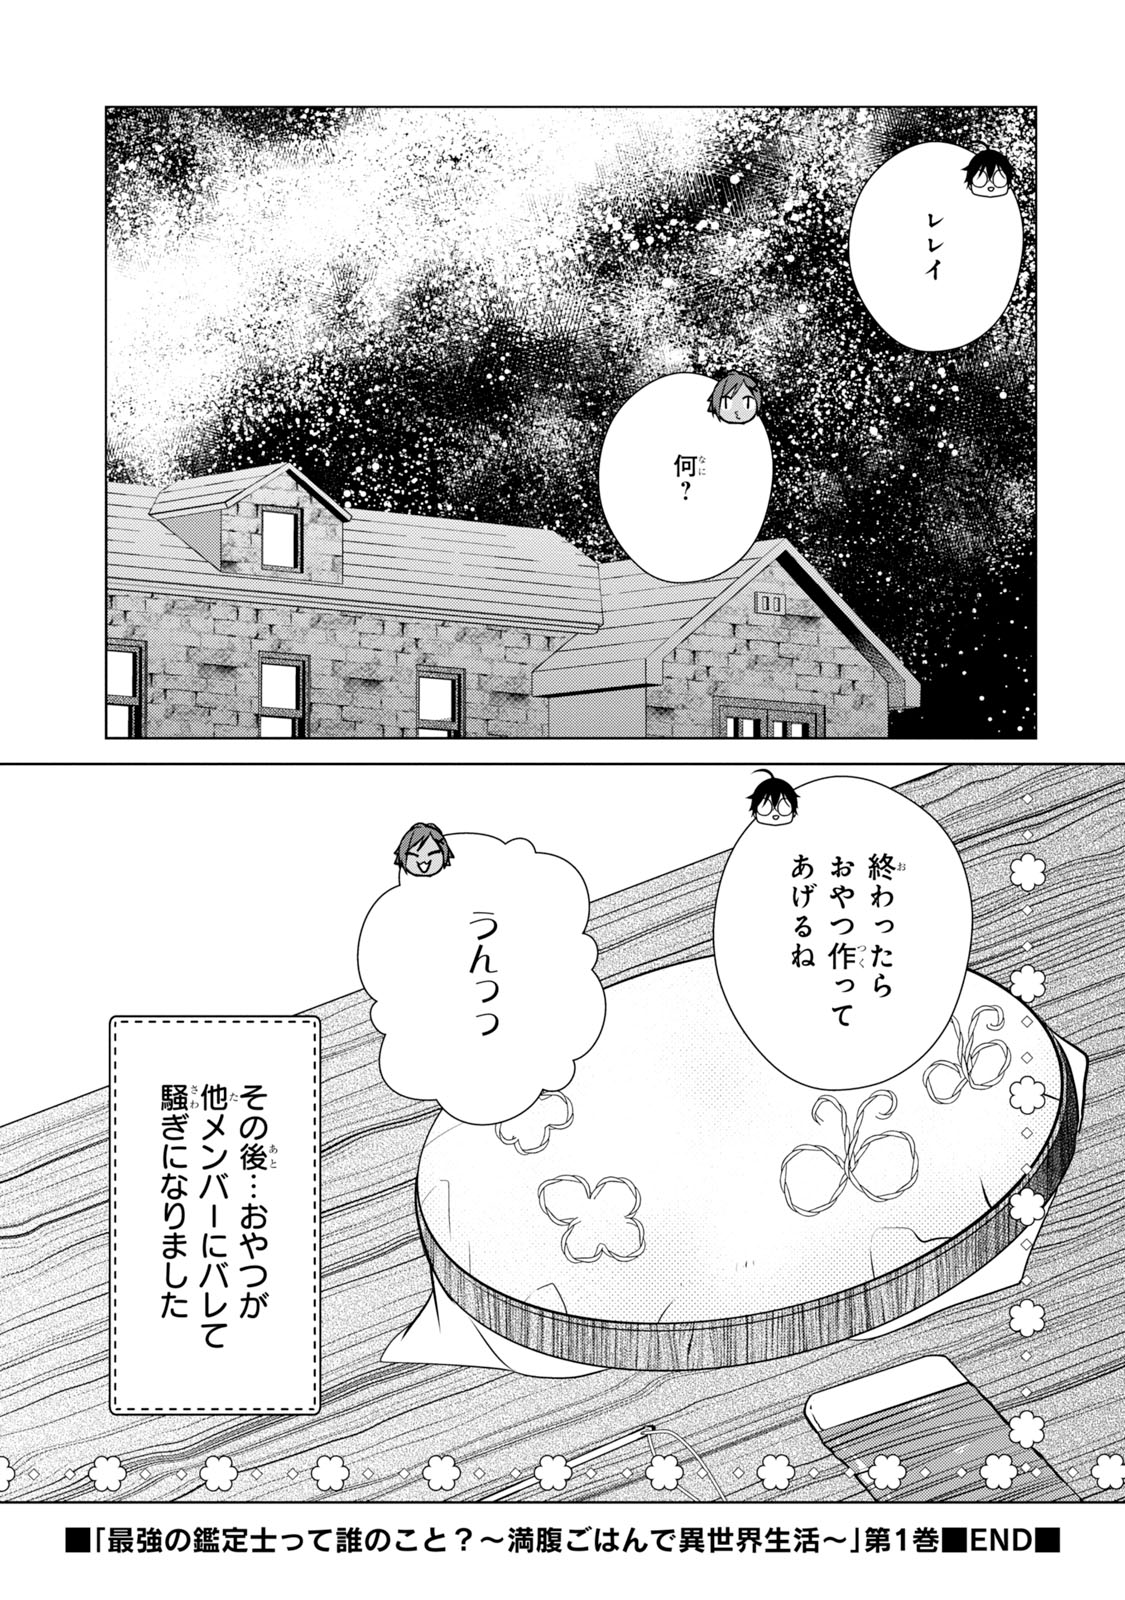 Saikyou no Kanteishi tte Dare no koto? ~Manpuku gohan de Isekai Seikatsu~ - Chapter 5.5-3 - Page 5